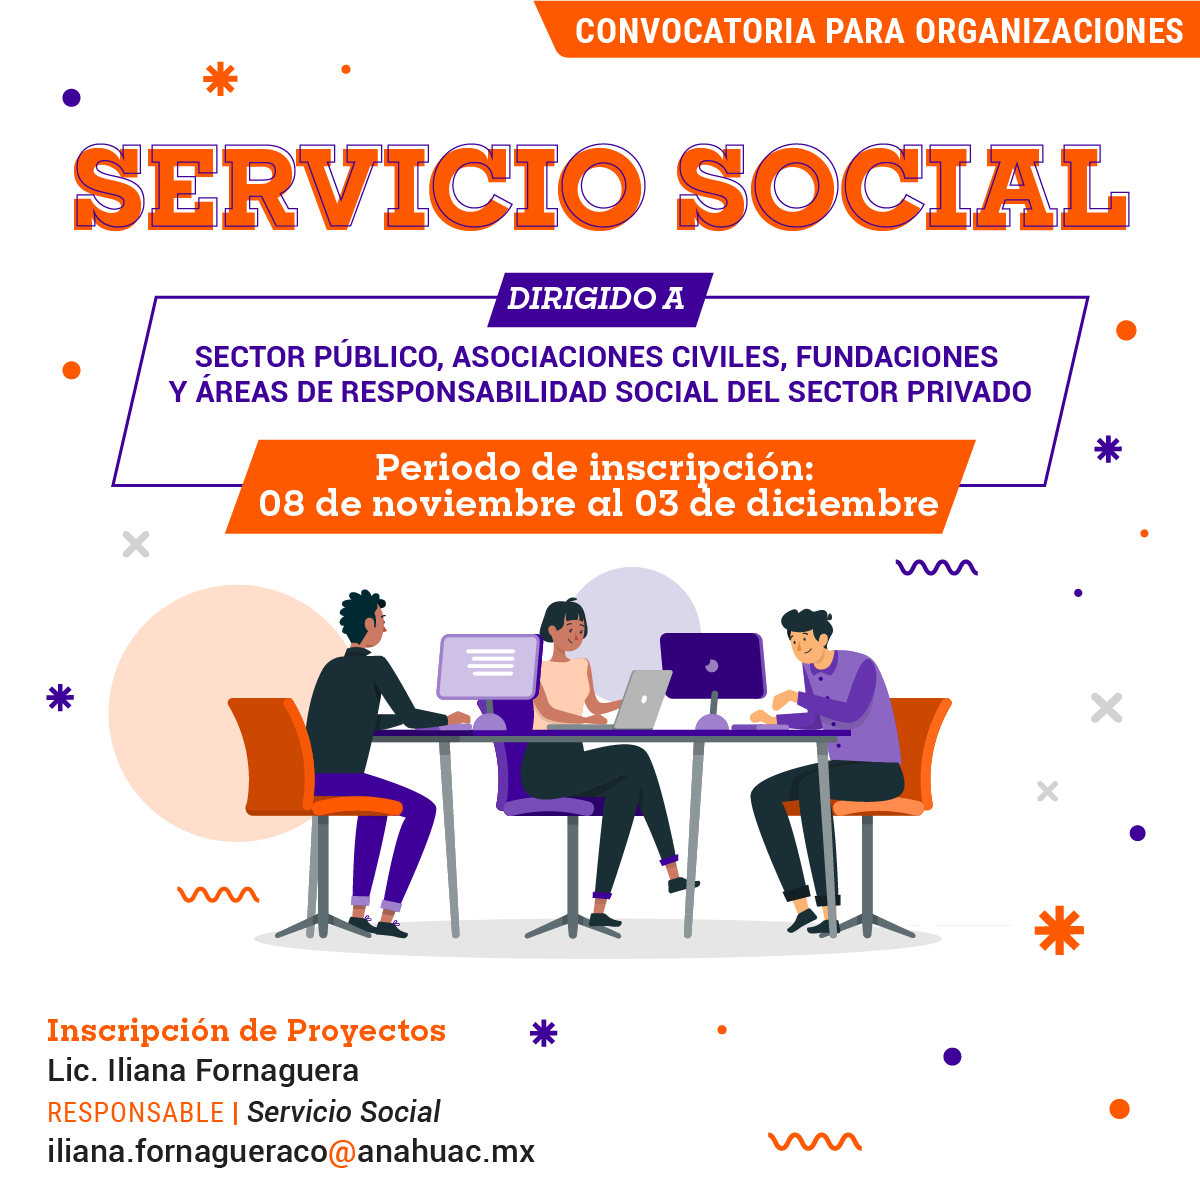 Servicio Social: Convocatoria para Organizaciones